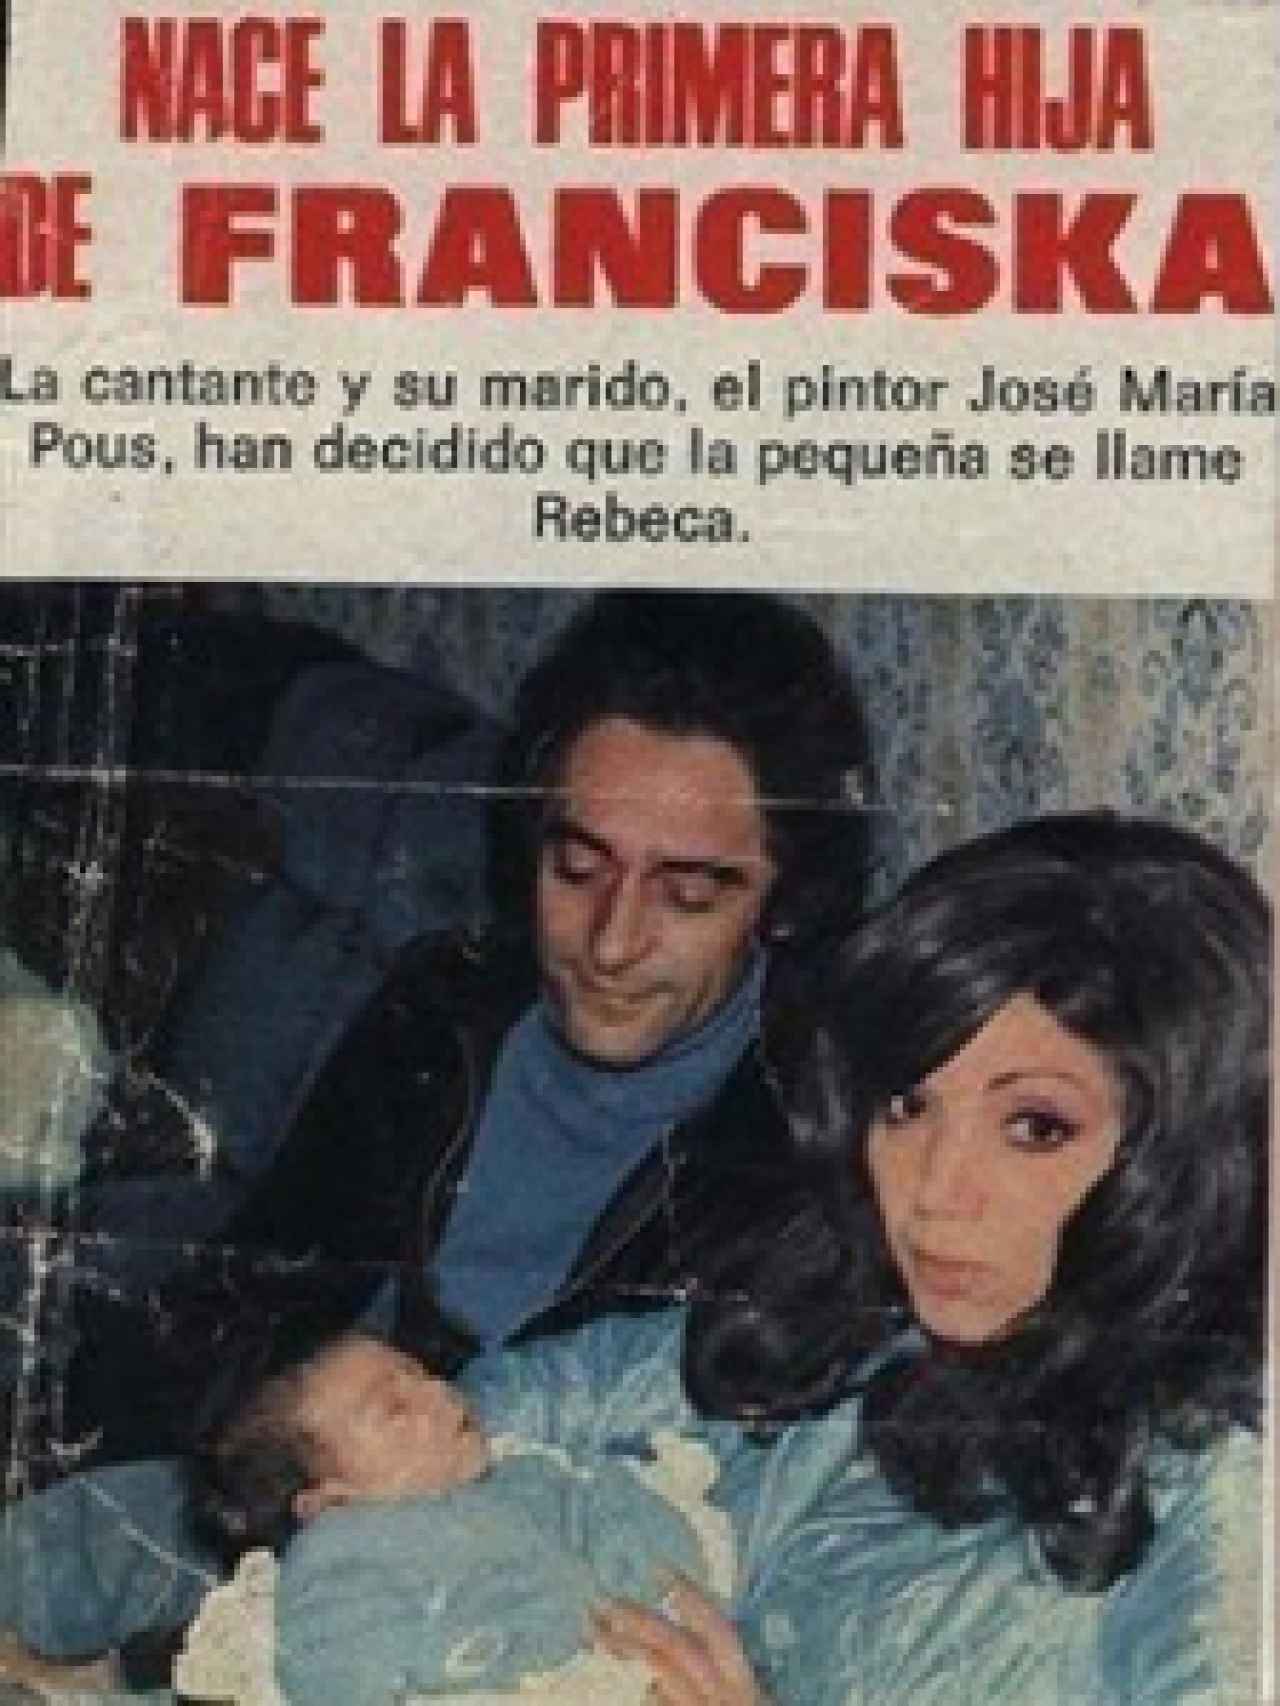 Franciska y José María Pous fueron portada de revista cuando nació Rebeca.